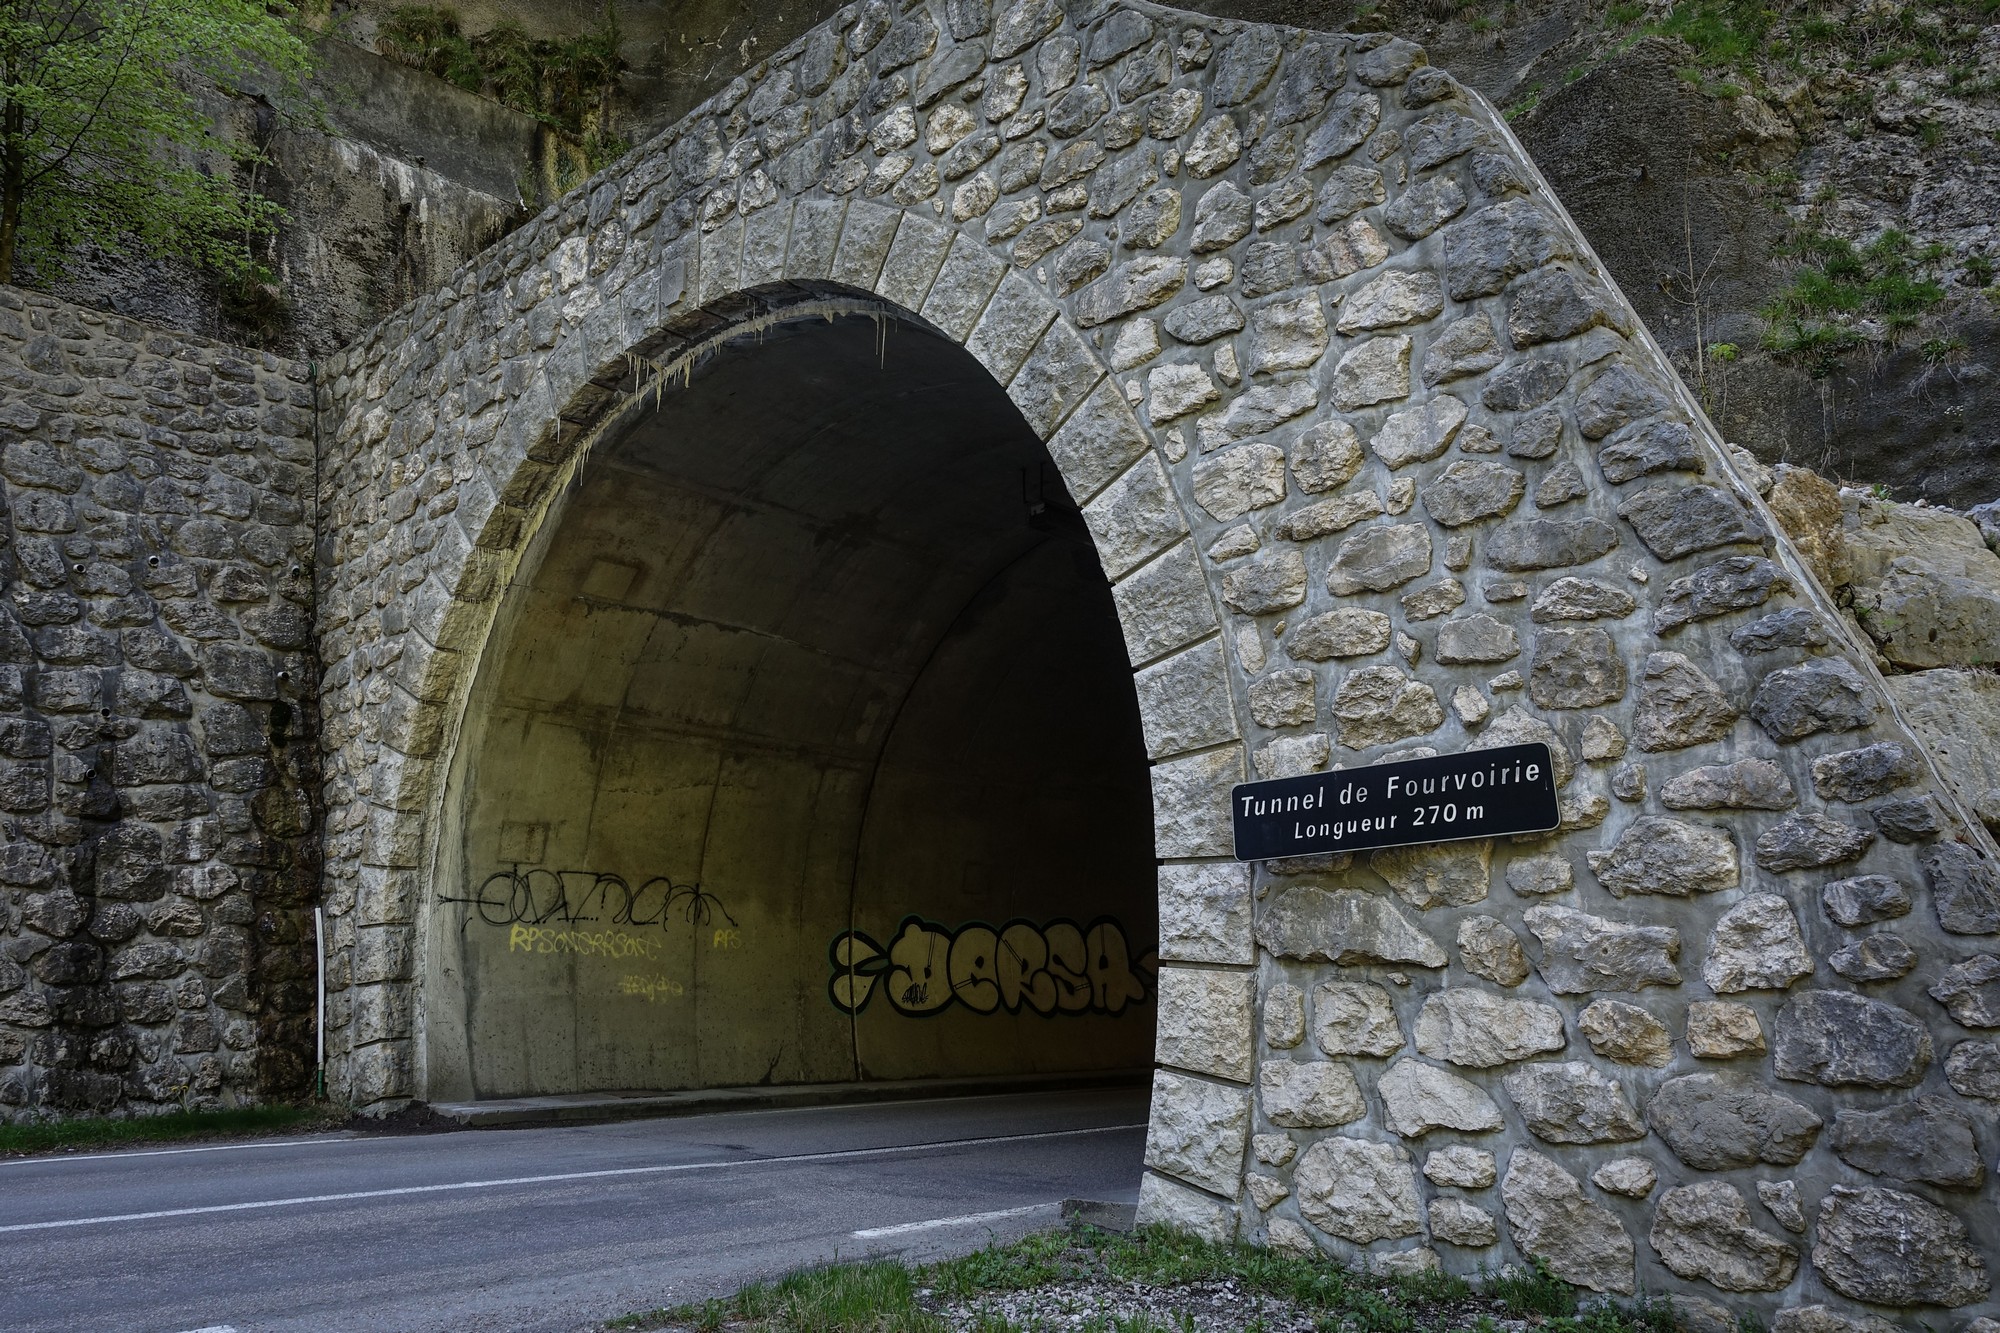 Tunnel de Fourvoirie